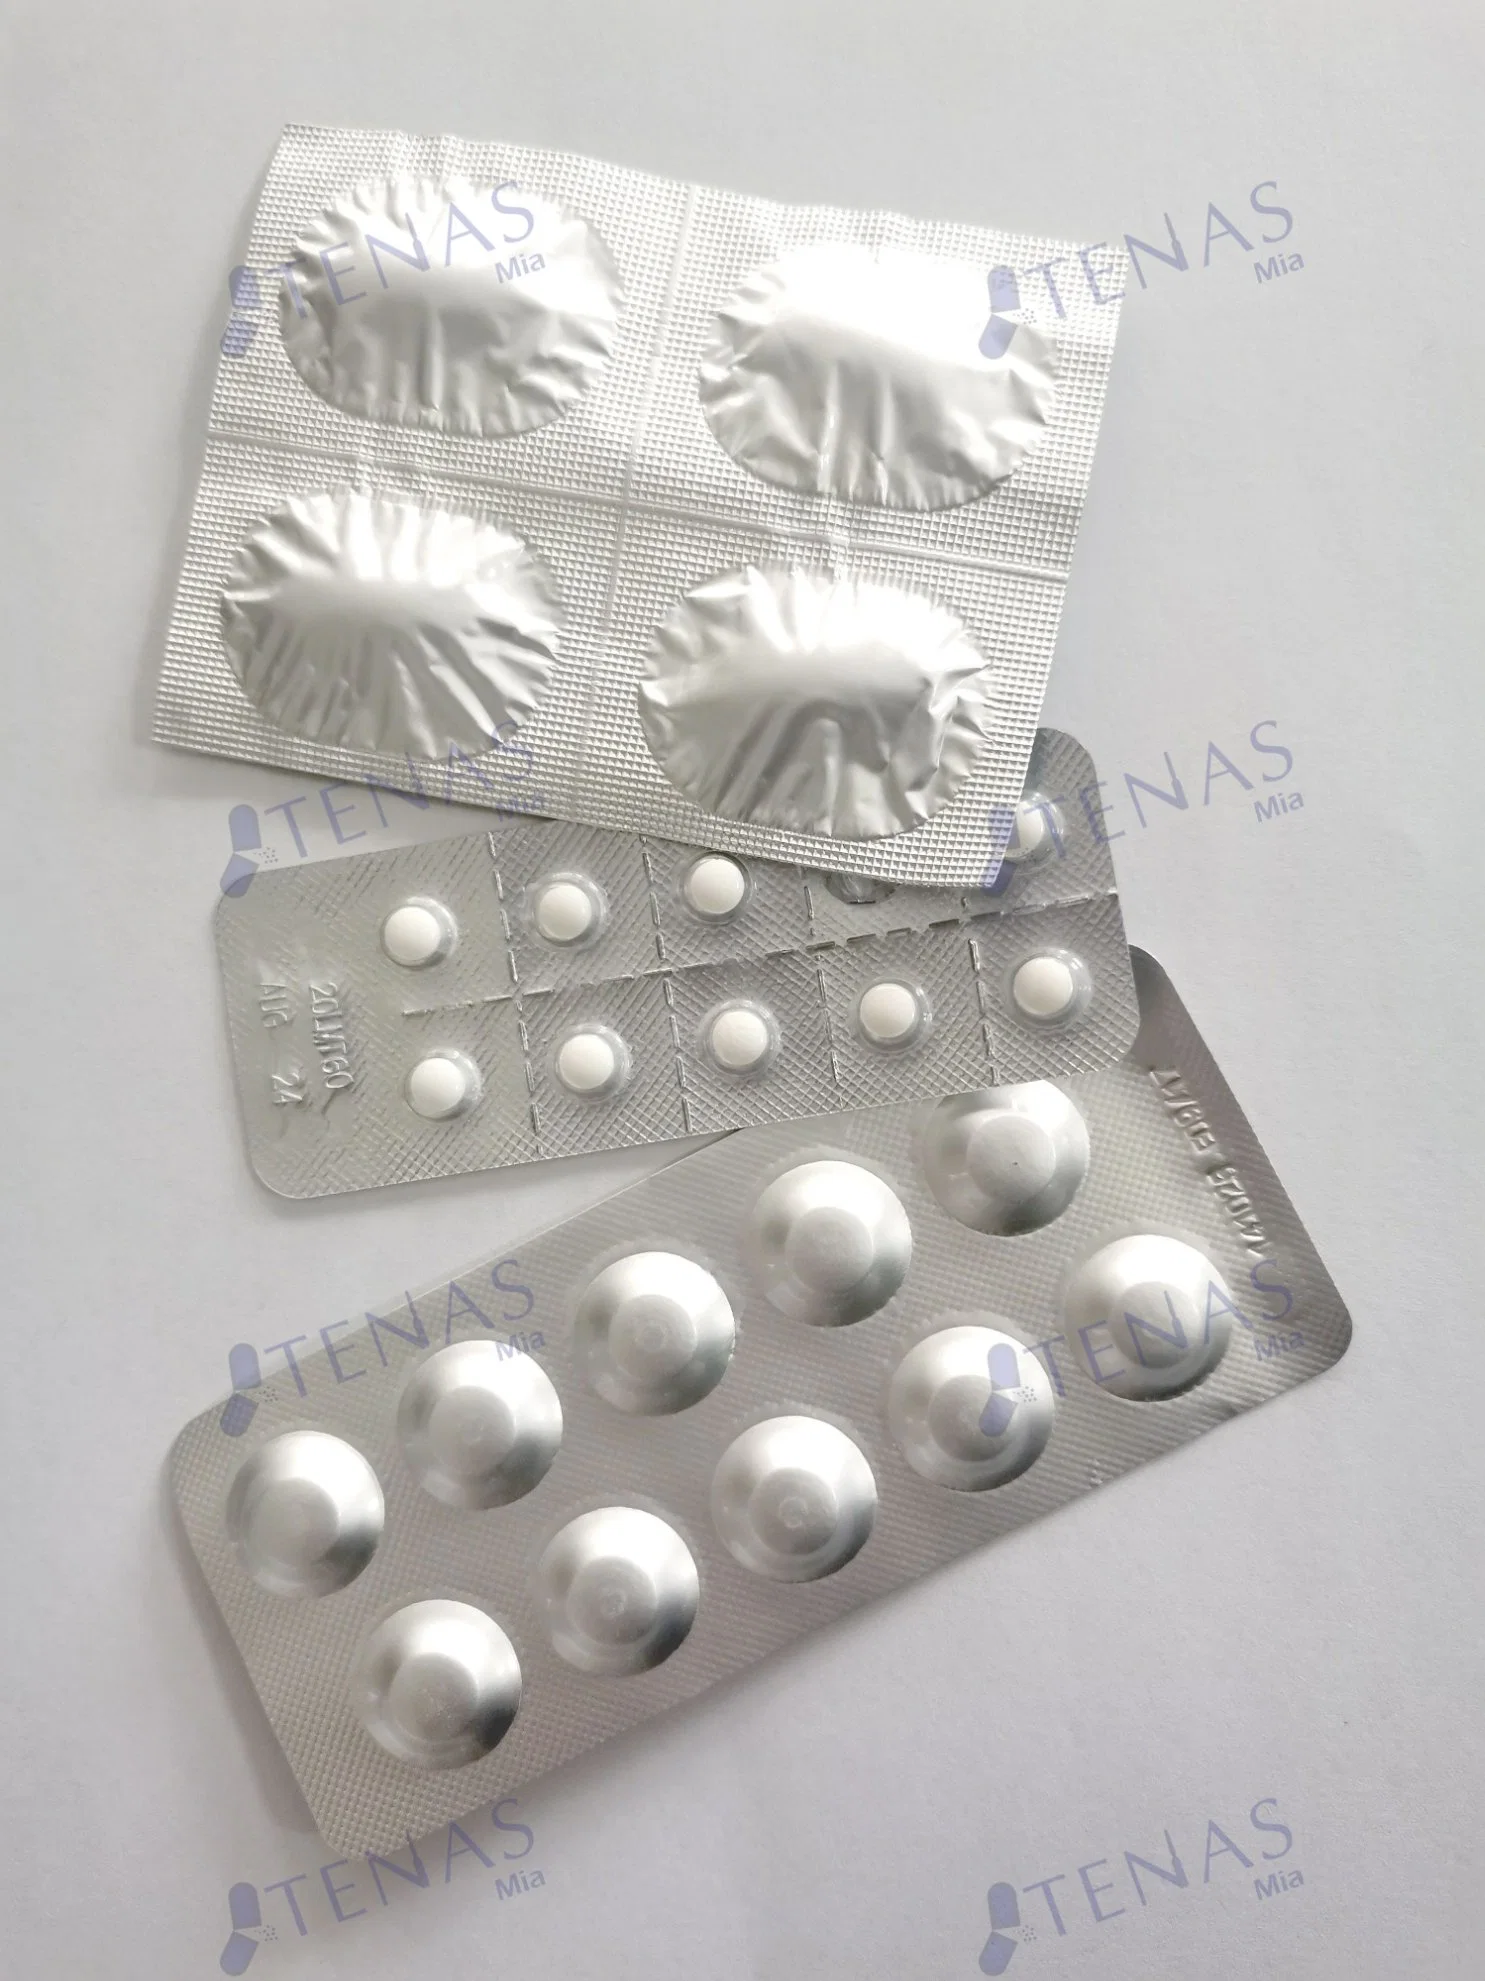 Tablet Alpha-Dihydroartemisinin certificadas BPF Medicina ocidental